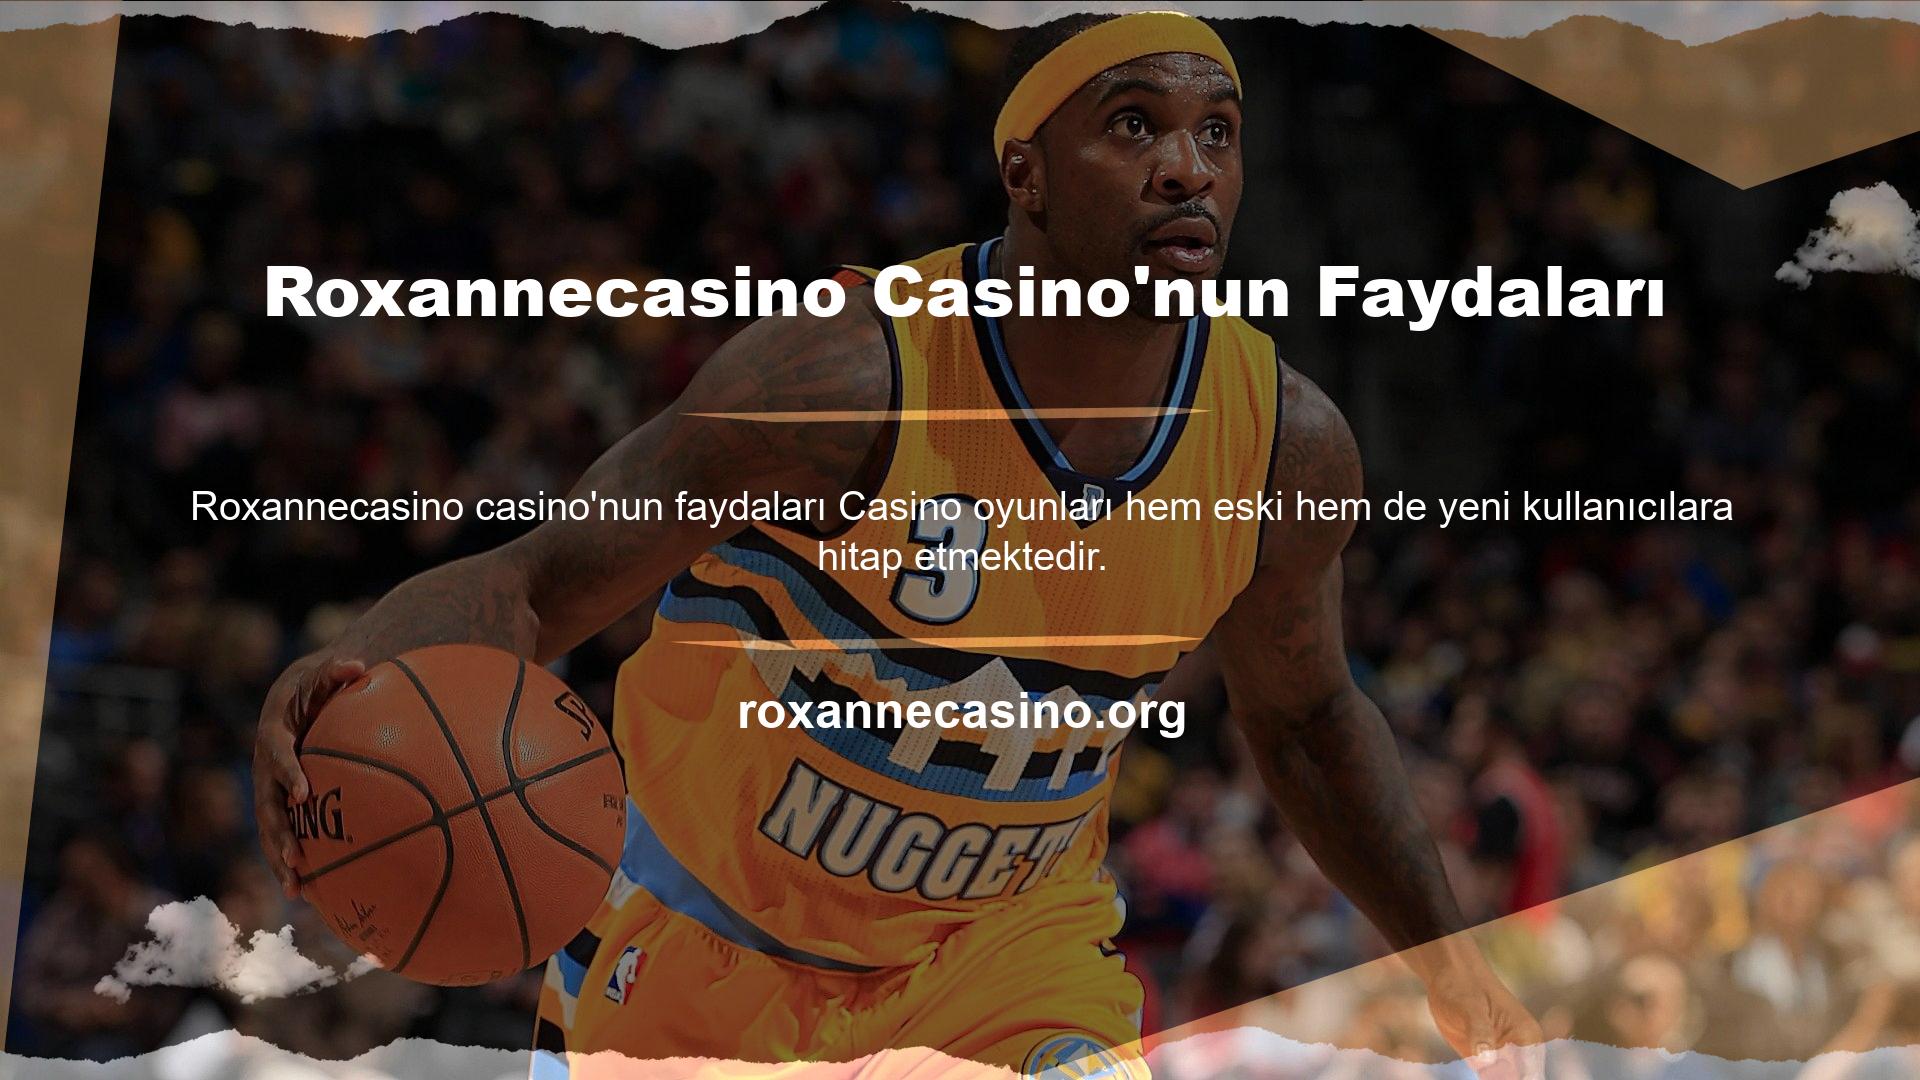 Roxannecasino Casino'nun avantajları şunlardır:

	Casino oyunları çok ilgi çekici olacak şekilde tasarlanmıştır